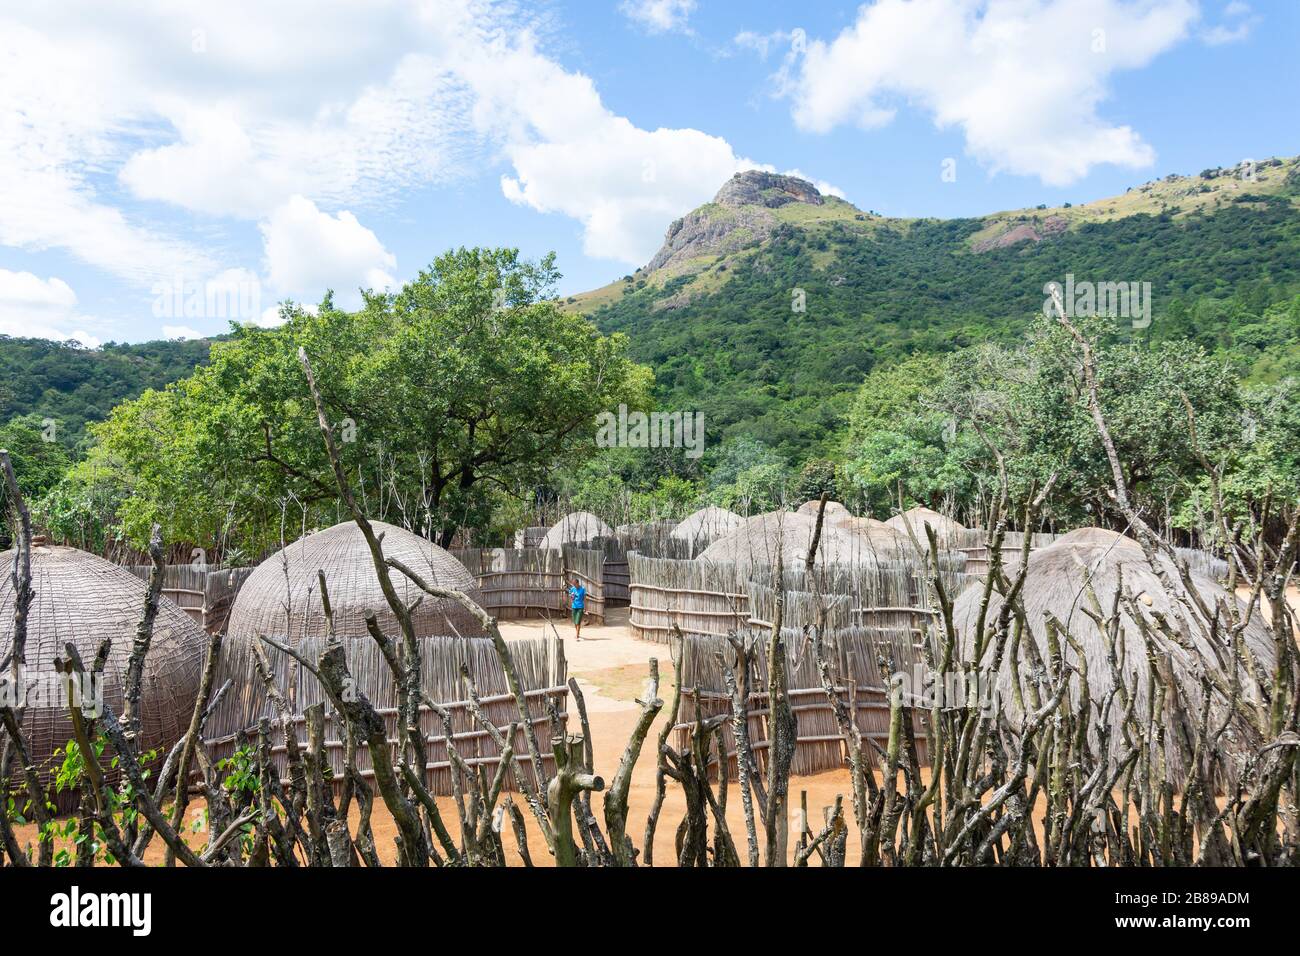 Case di alveare tradizionali al Centro Culturale Swazi, Riserva Naturale di Mantenga, Lobamba, Valle Ezulwini, Regno di Eswatini (Swaziland) Foto Stock